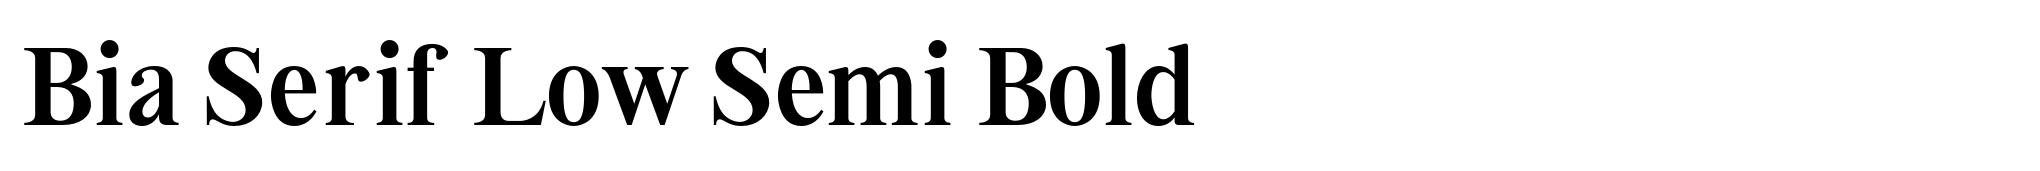 Bia Serif Low Semi Bold image